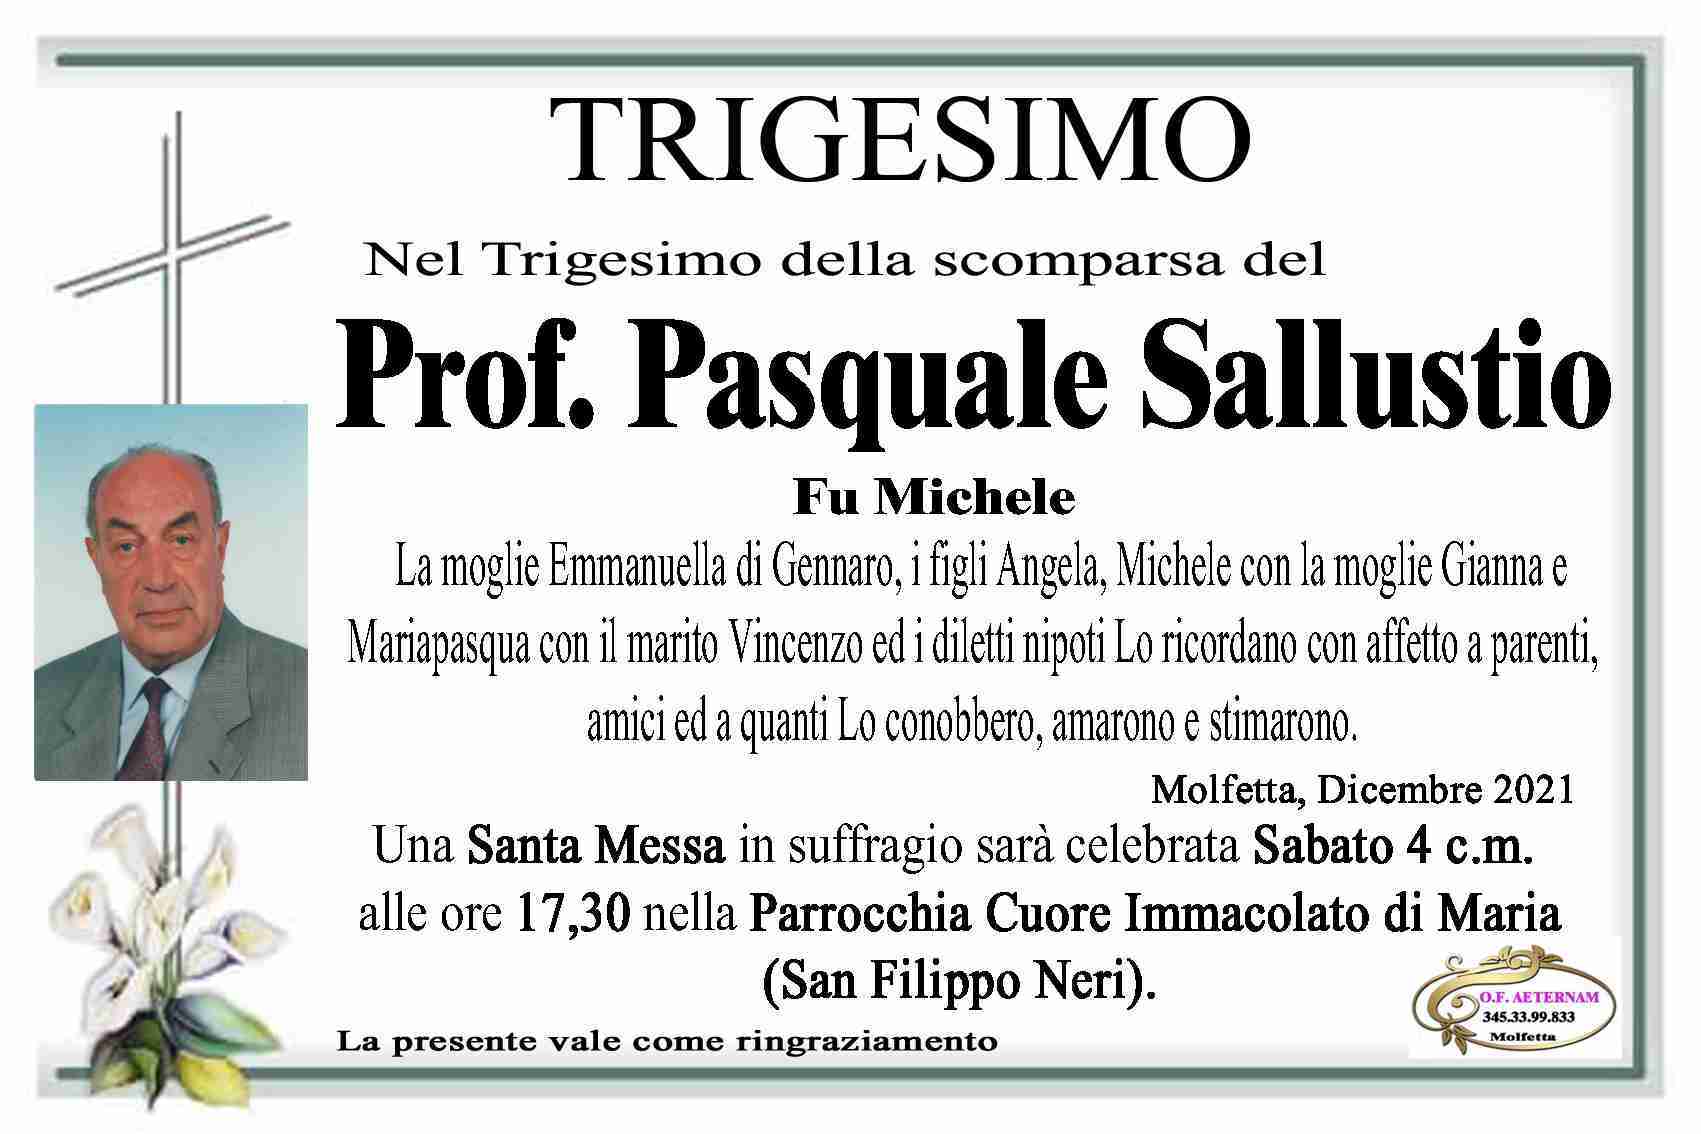 Pasquale Sallustio